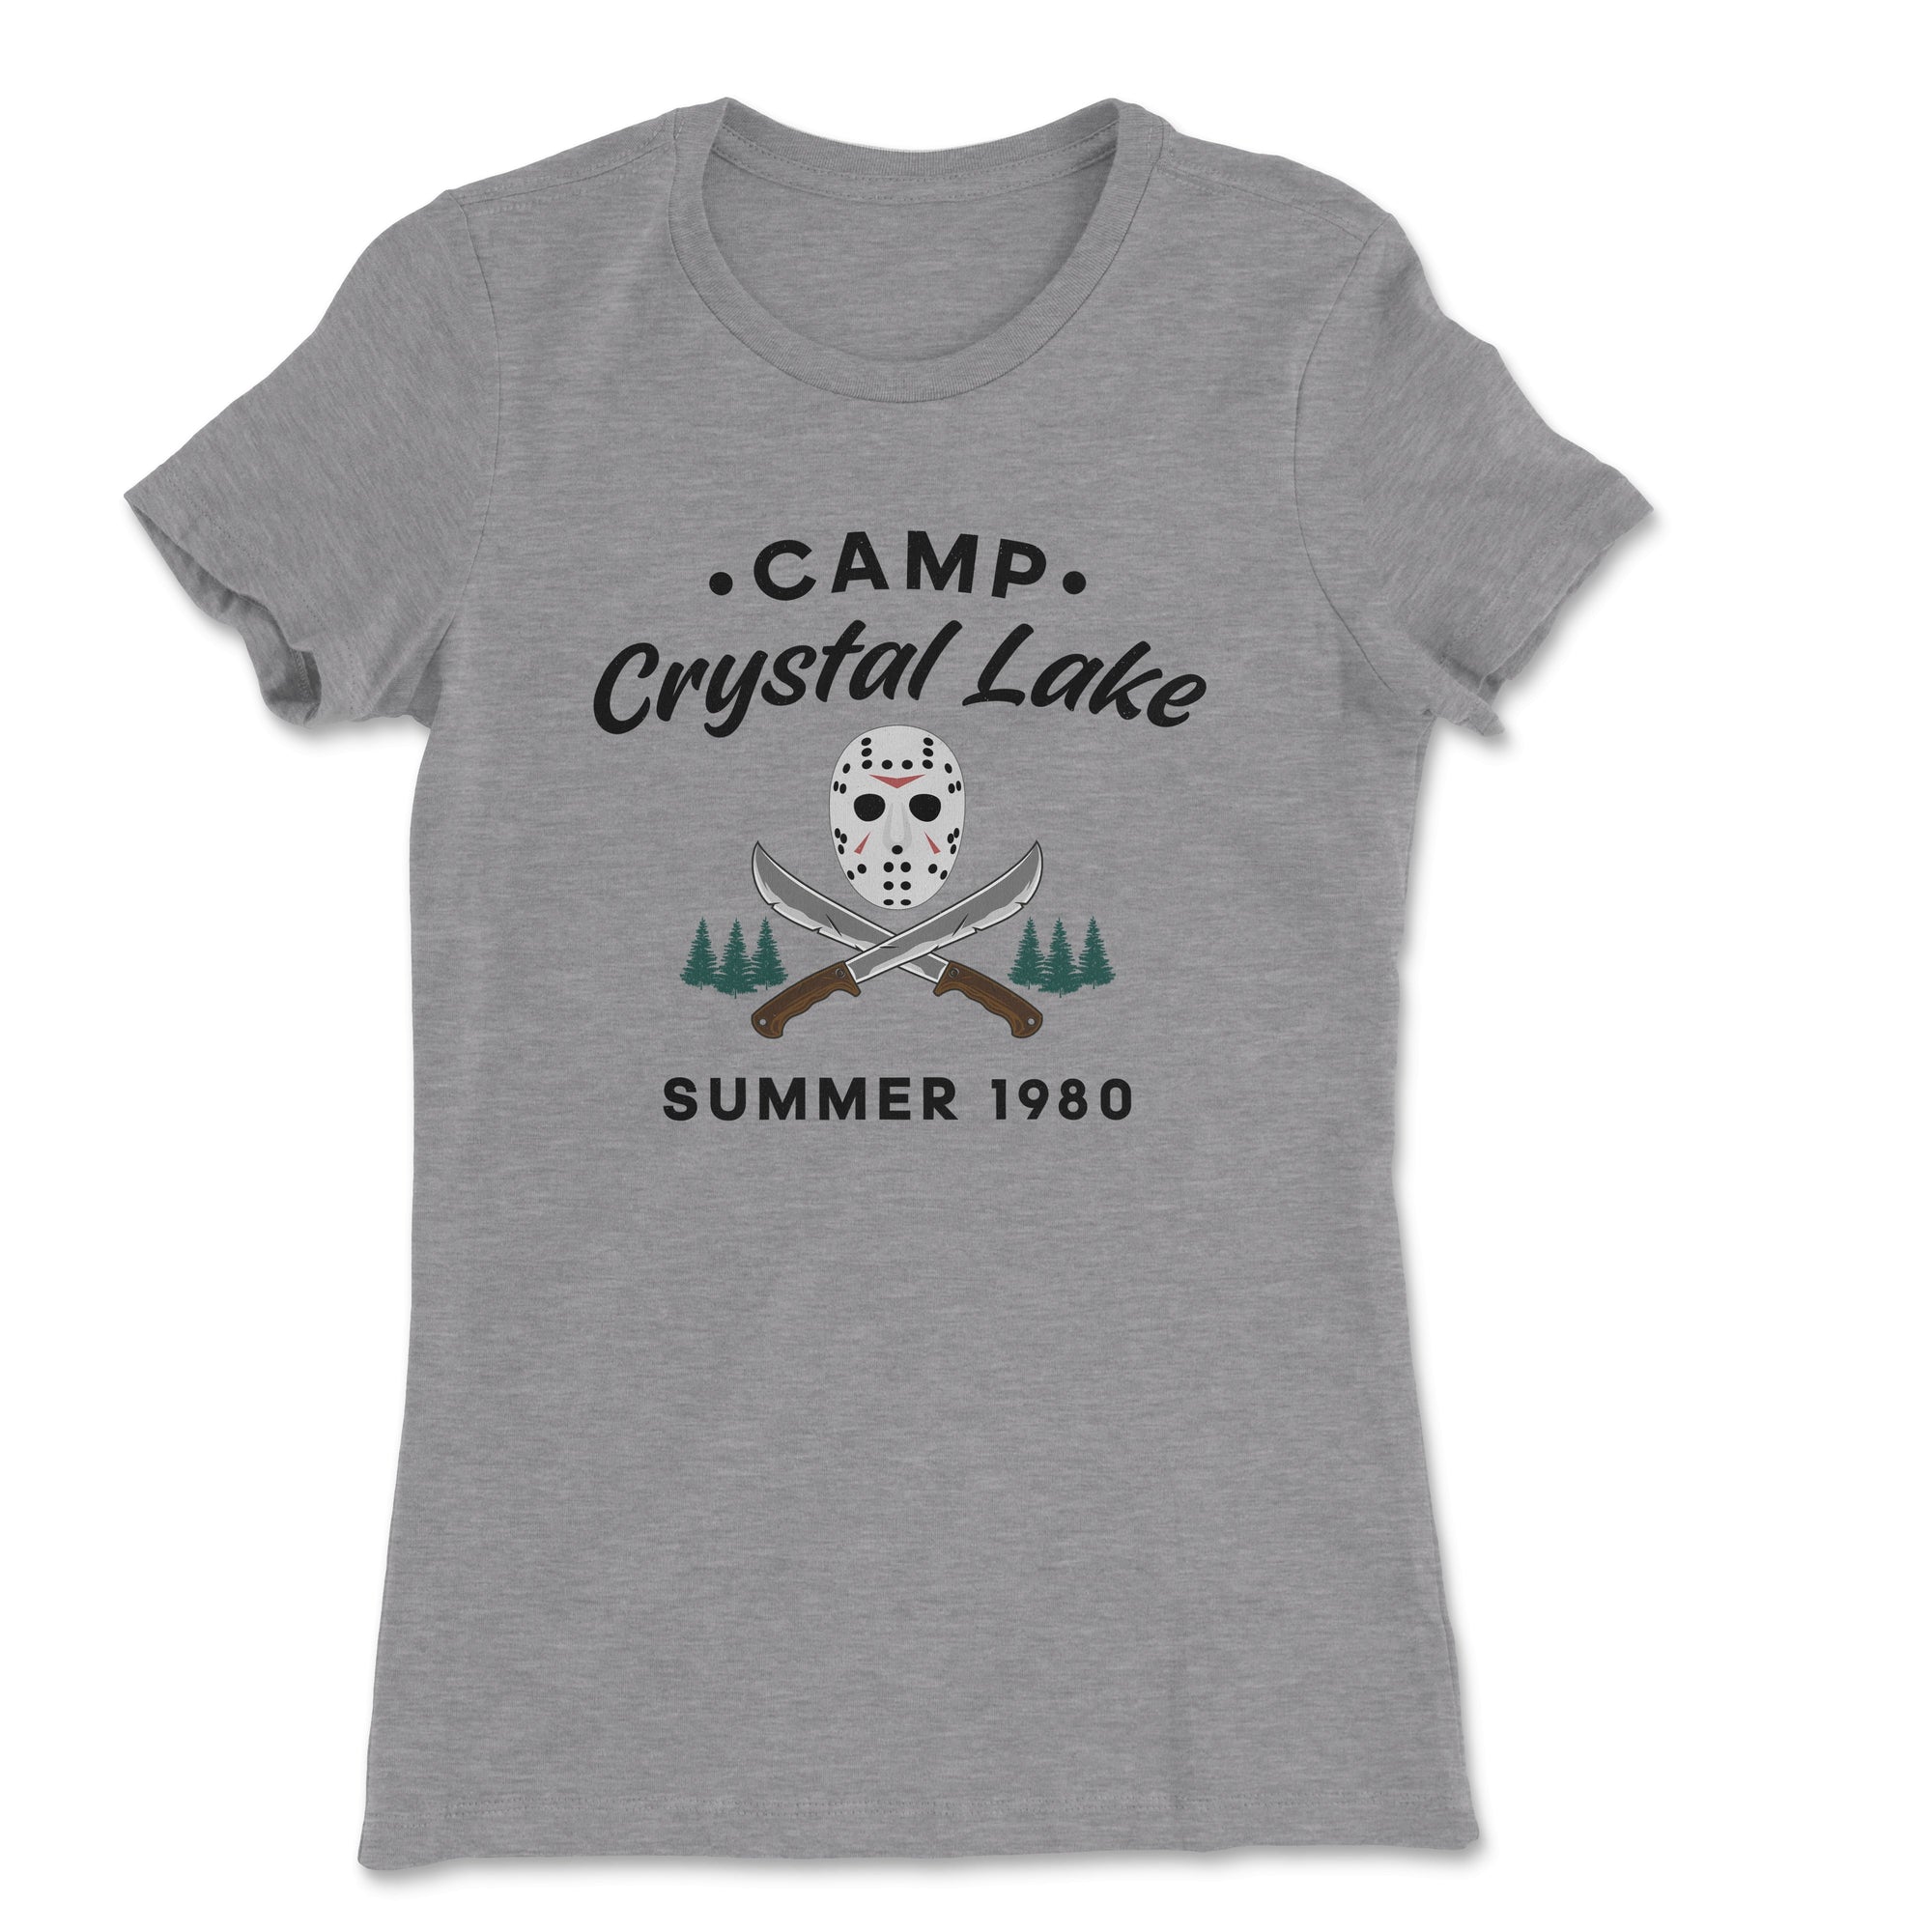 Camp Crystal Lake Women's T-Shirt